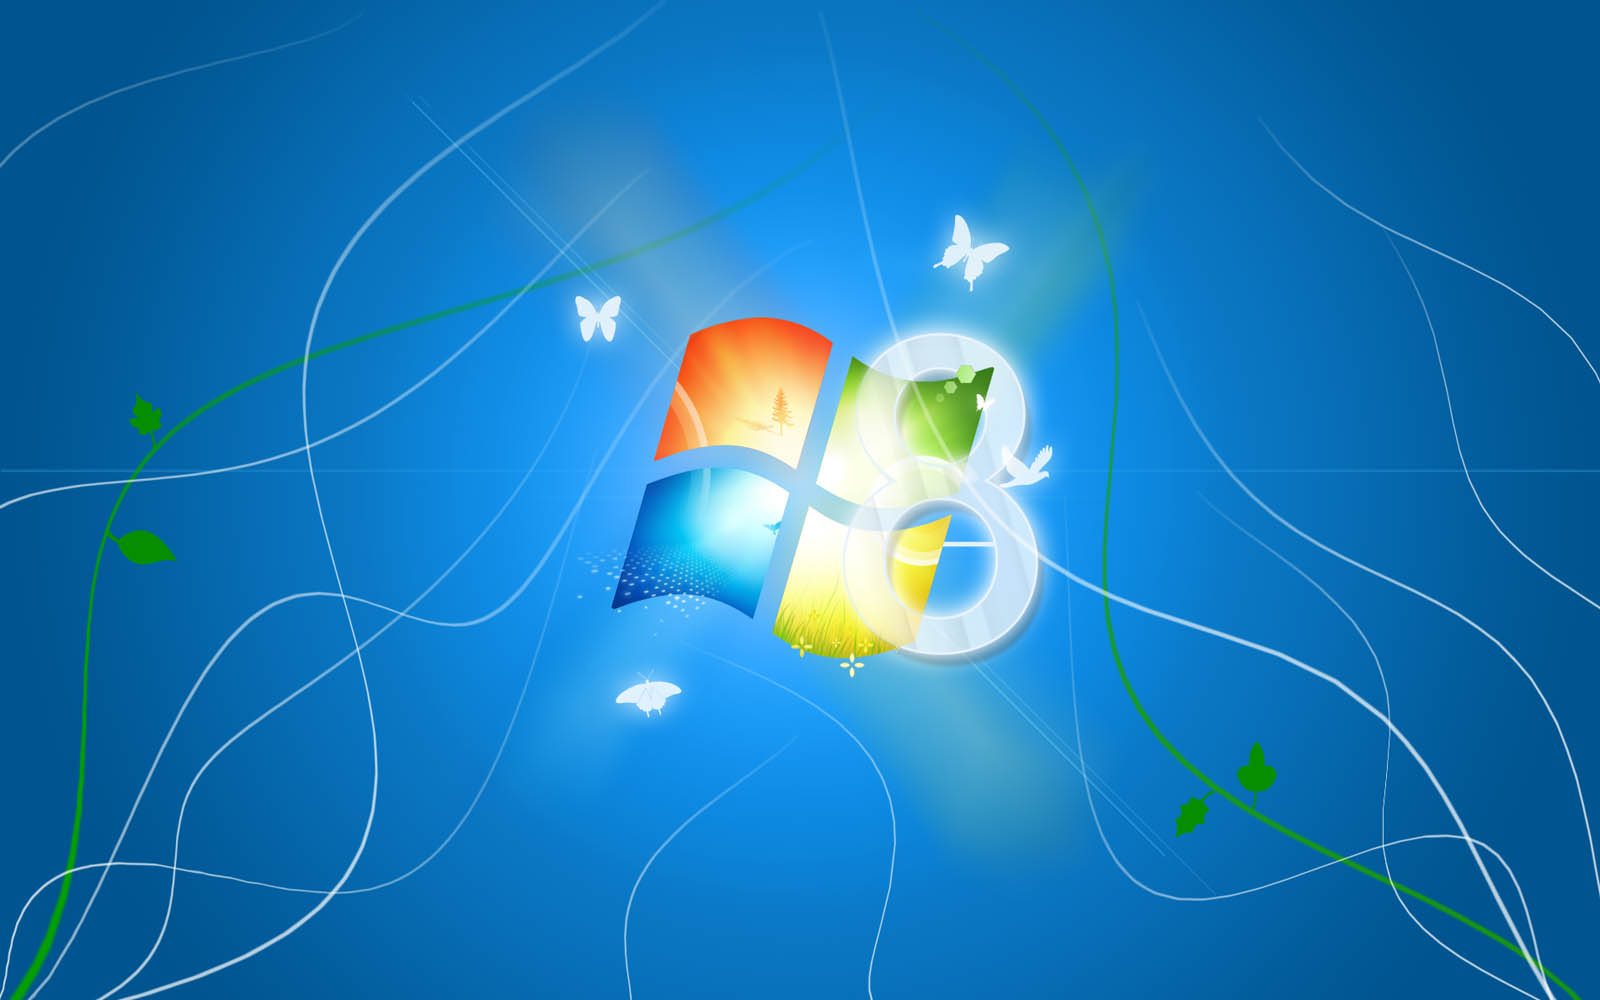 Tải miễn phí hình nền Windows 8 để tô điểm cho màn hình desktop của bạn trở nên thật lung linh. Bạn sẽ có cơ hội lựa chọn đa dạng với hàng trăm kiểu hình khác nhau, từ đơn giản đến nghệ thuật. Hãy thử ngay!